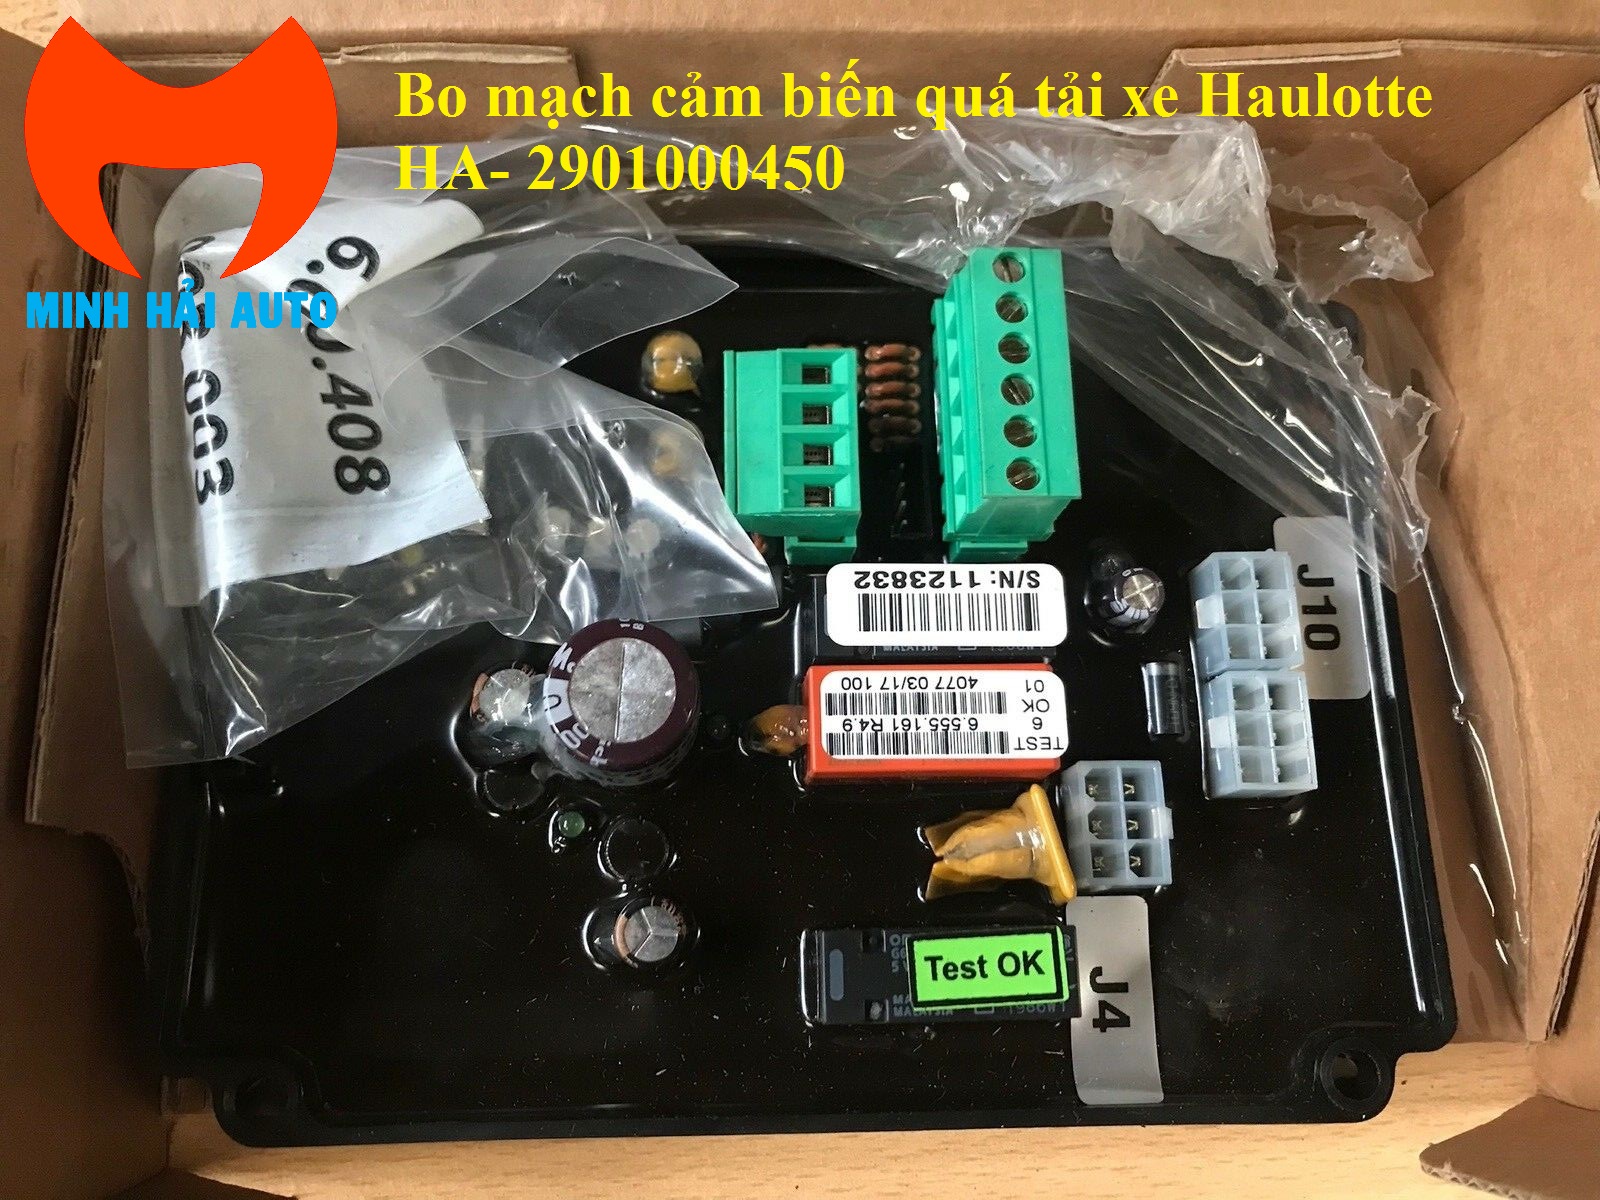 Bo mạch cảm biến quá tải trên xe Haulotte HA20 HA26 mã HA 2901000450